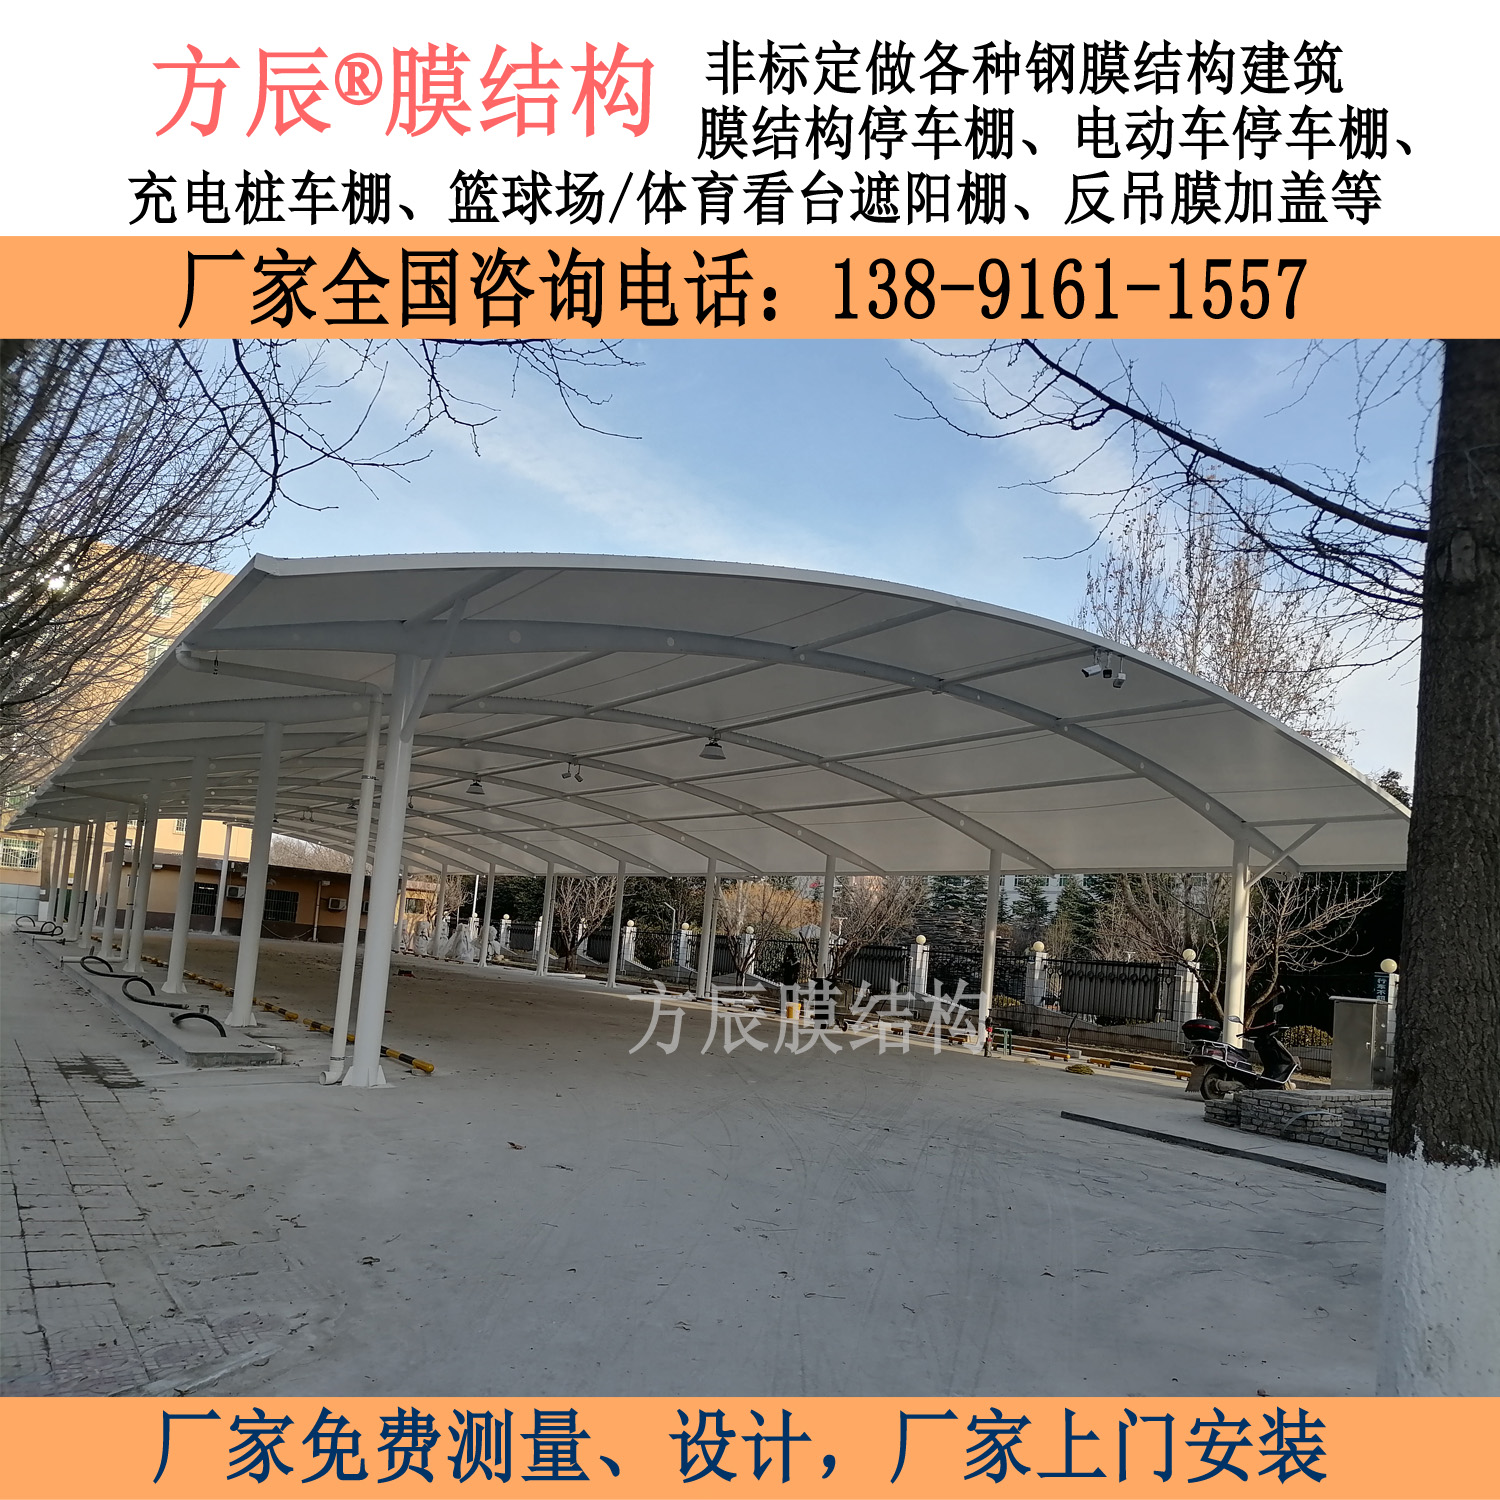 陕西省铜川市耀州区春明园小区内膜结构停车棚项目